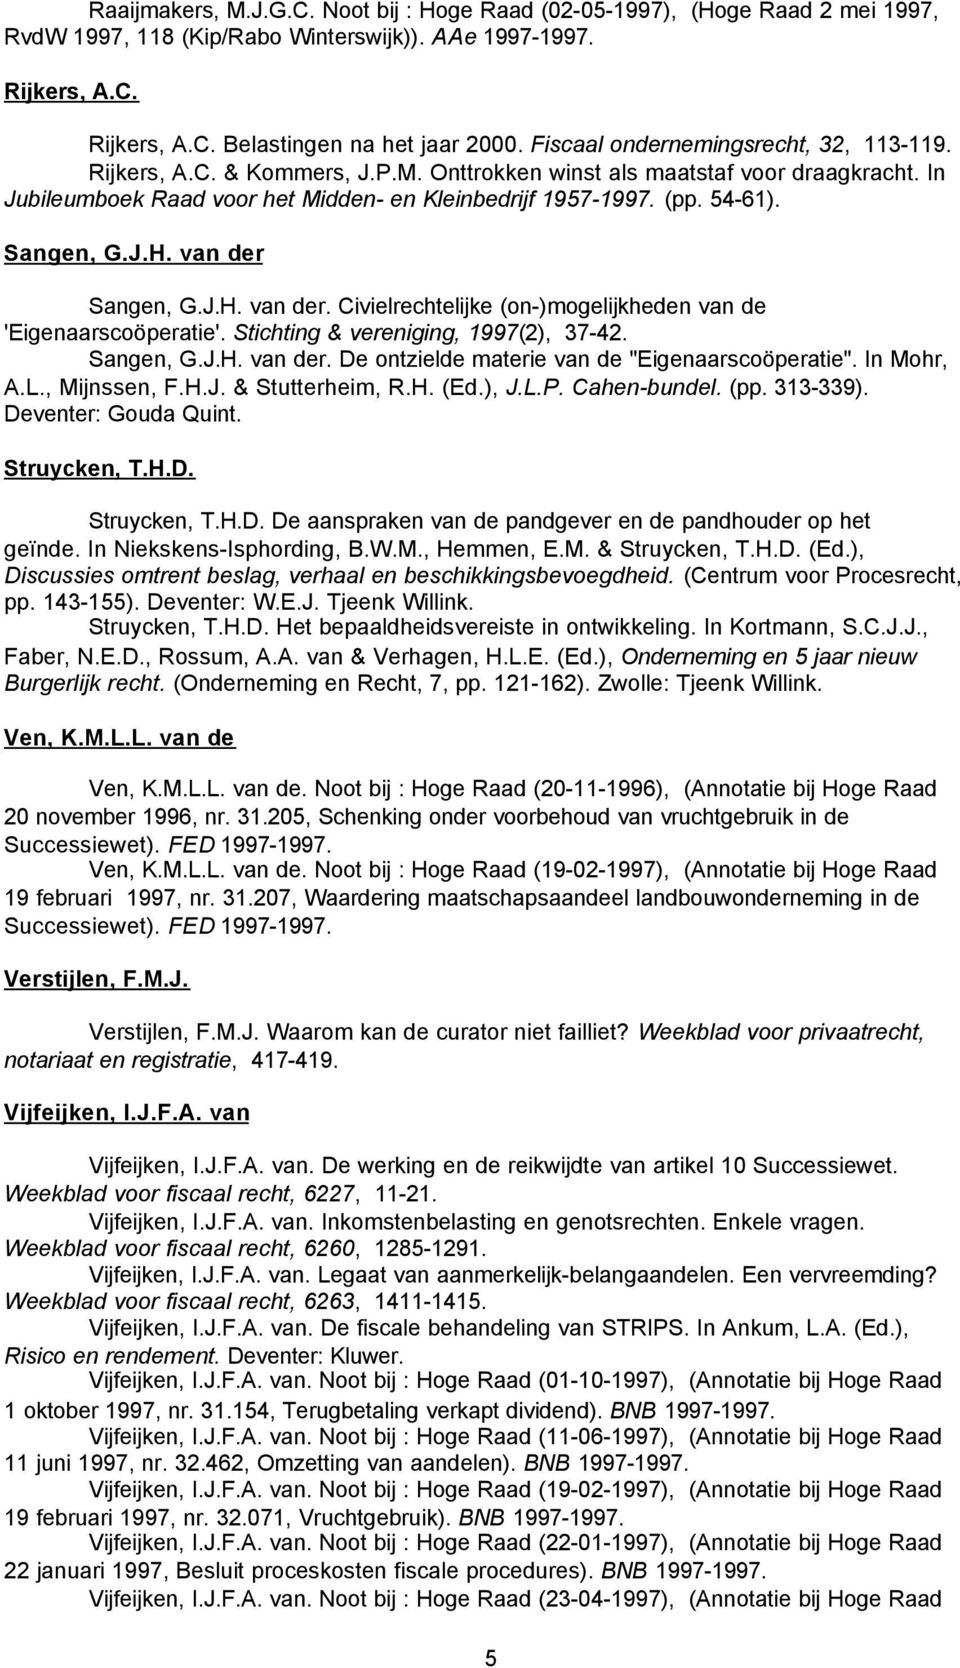 Sangen, G.J.H. van der Sangen, G.J.H. van der. Civielrechtelijke (on-)mogelijkheden van de 'Eigenaarscoöperatie'. Stichting & vereniging, 1997(2), 37-42. Sangen, G.J.H. van der. De ontzielde materie van de "Eigenaarscoöperatie".